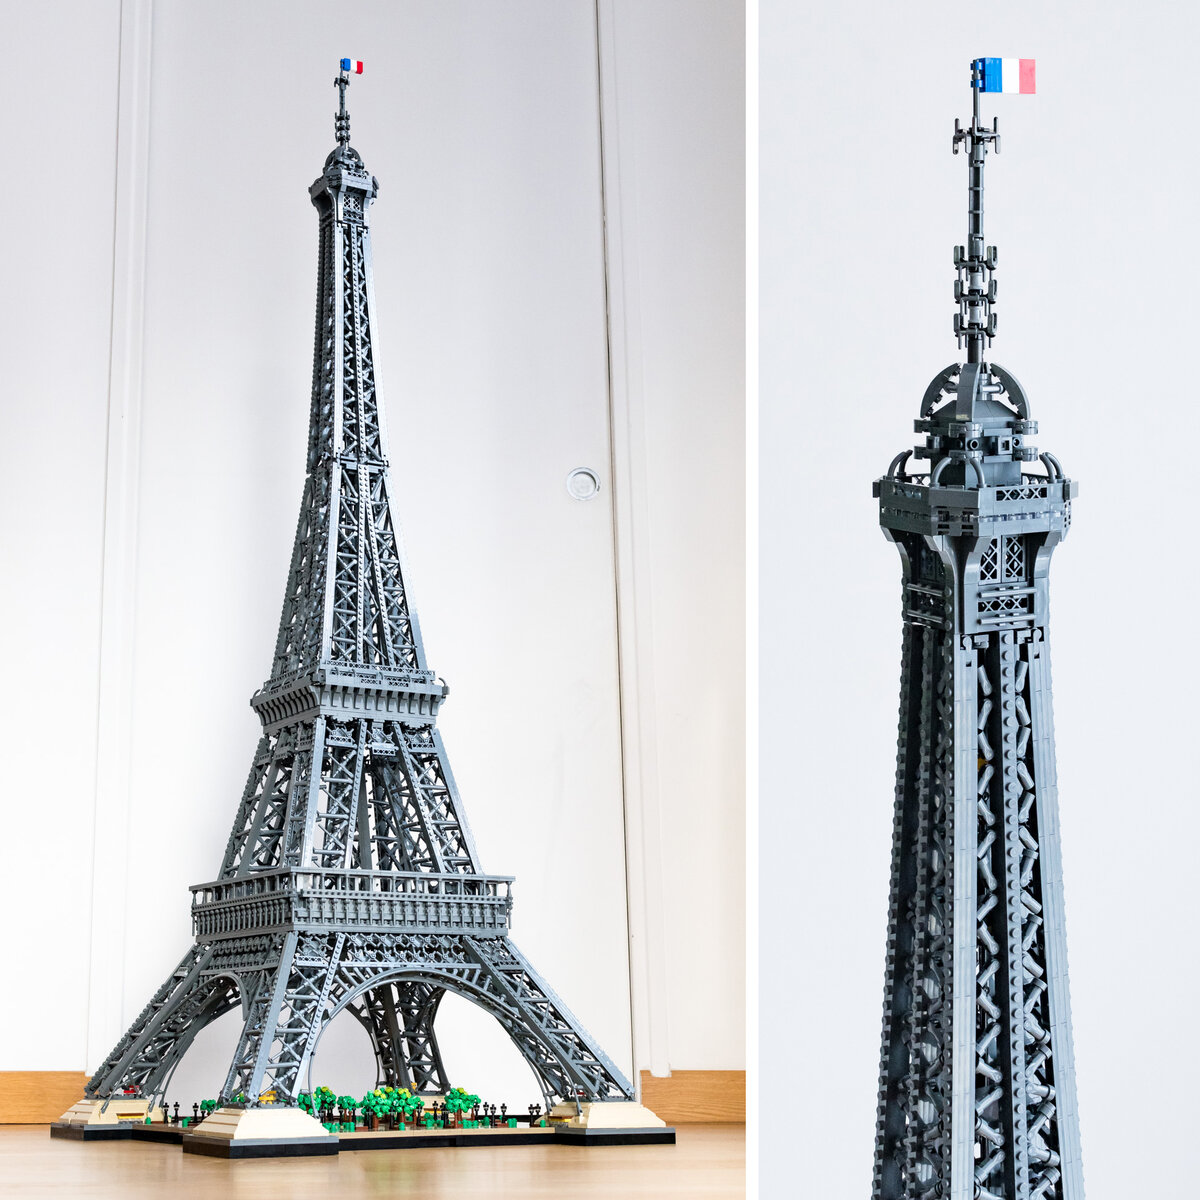 Futur set Tour Eiffel 10307 - Autour des briques LEGO - Forum FreeLUG